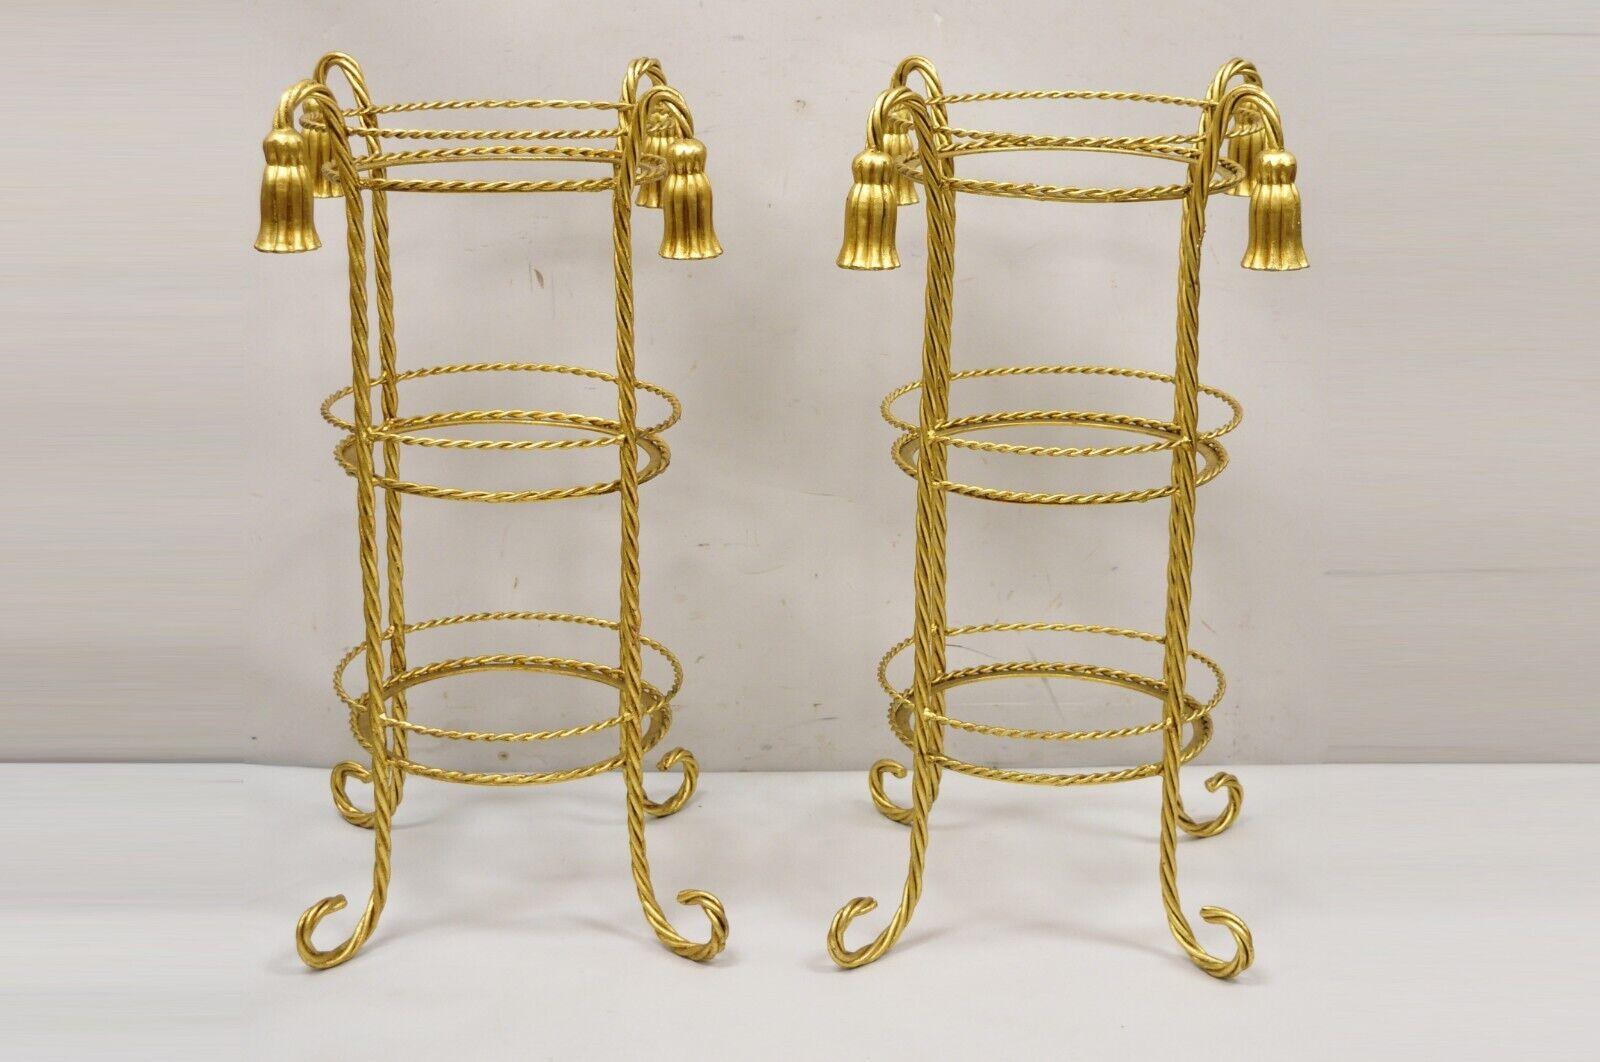 Vintage Italian Hollywood Regency 3 Tier Gold Iron Rope Tassel Muffin Stand Accent Side Tables - ein Paar. Der Artikel hat 3 runde Etagen (ca. 11,25 Durchmesser). Enthält kein Glas). Eisen-Metallrahmen, Blattgold vergoldet, Quaste Form Akzente,